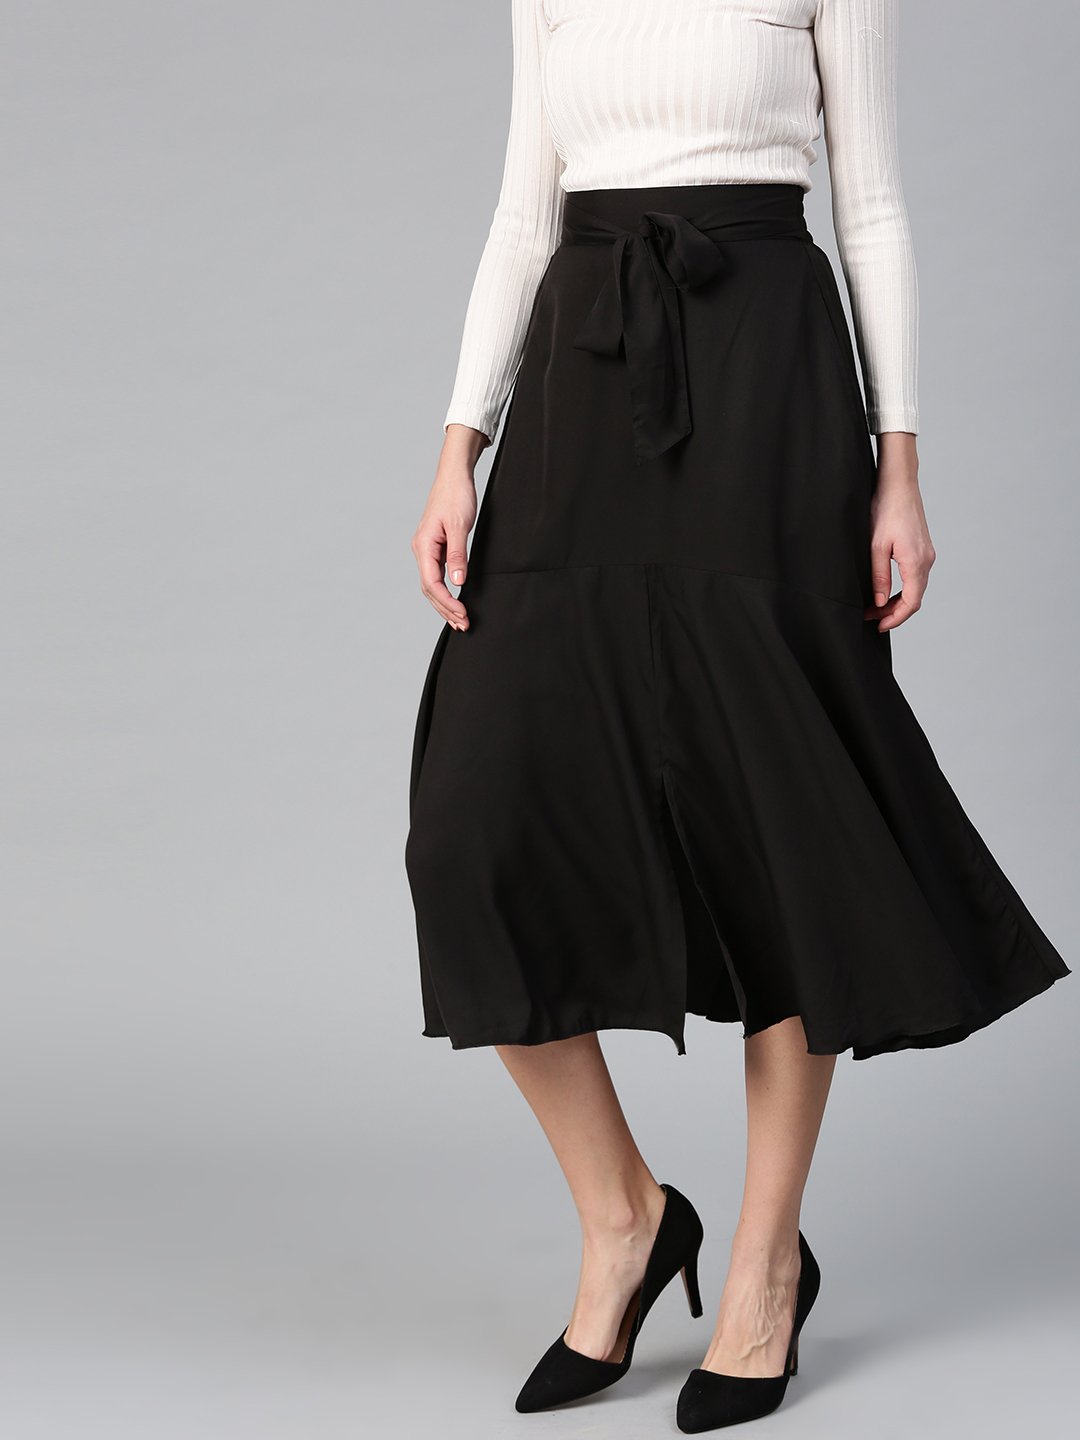 Black Gored Crepe Skirt St. Gillian Sportswear - Ruby Lane